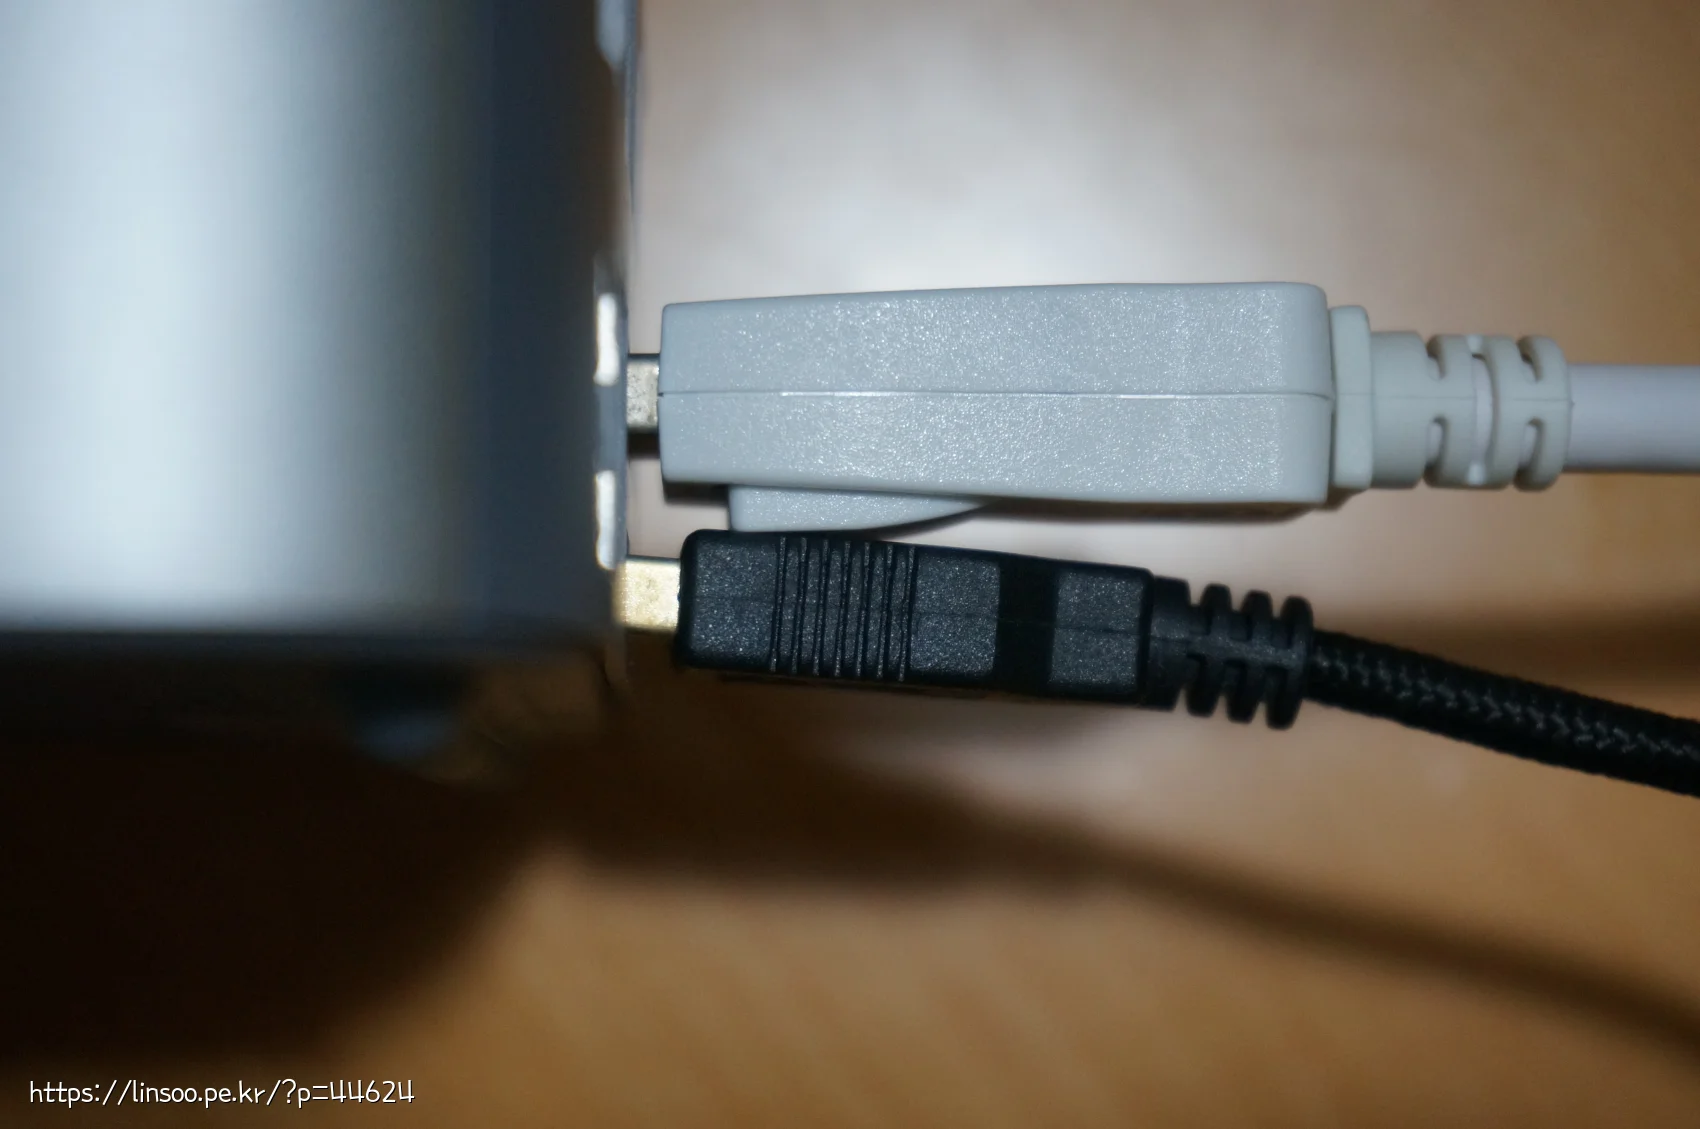 USB 간섭이 생기는 DP포트 모습